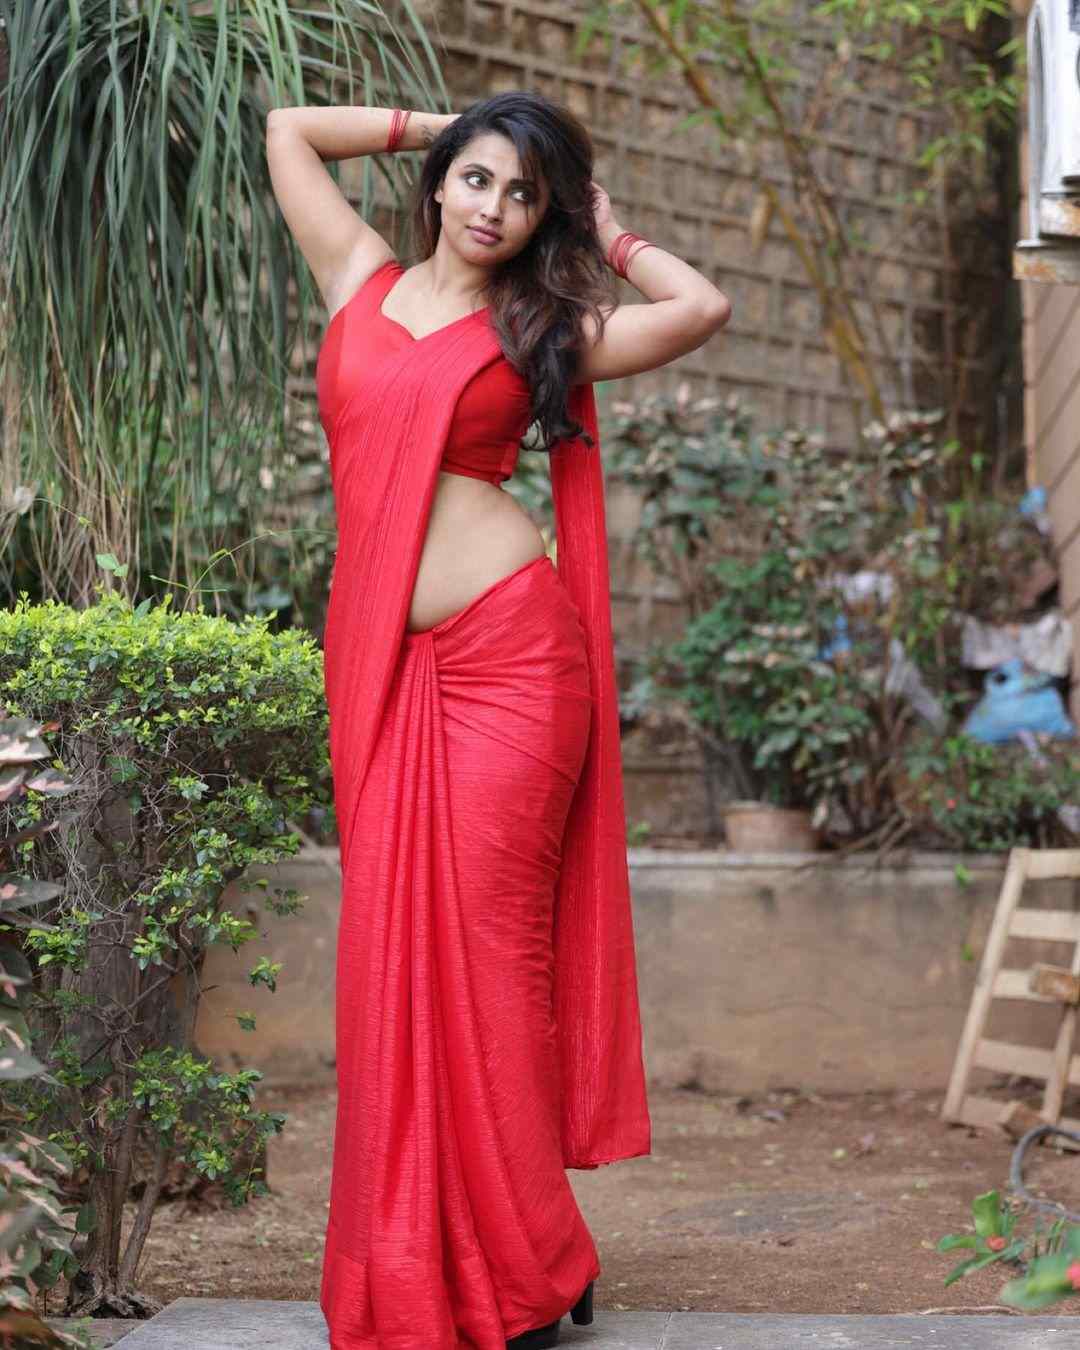 Roopashree Nair. Telugu Actress Roopashree Nair hot photos and videos. Roopashree Nair sex videos. Anicka Vikramman hot movies. Roopashree Nair mallu